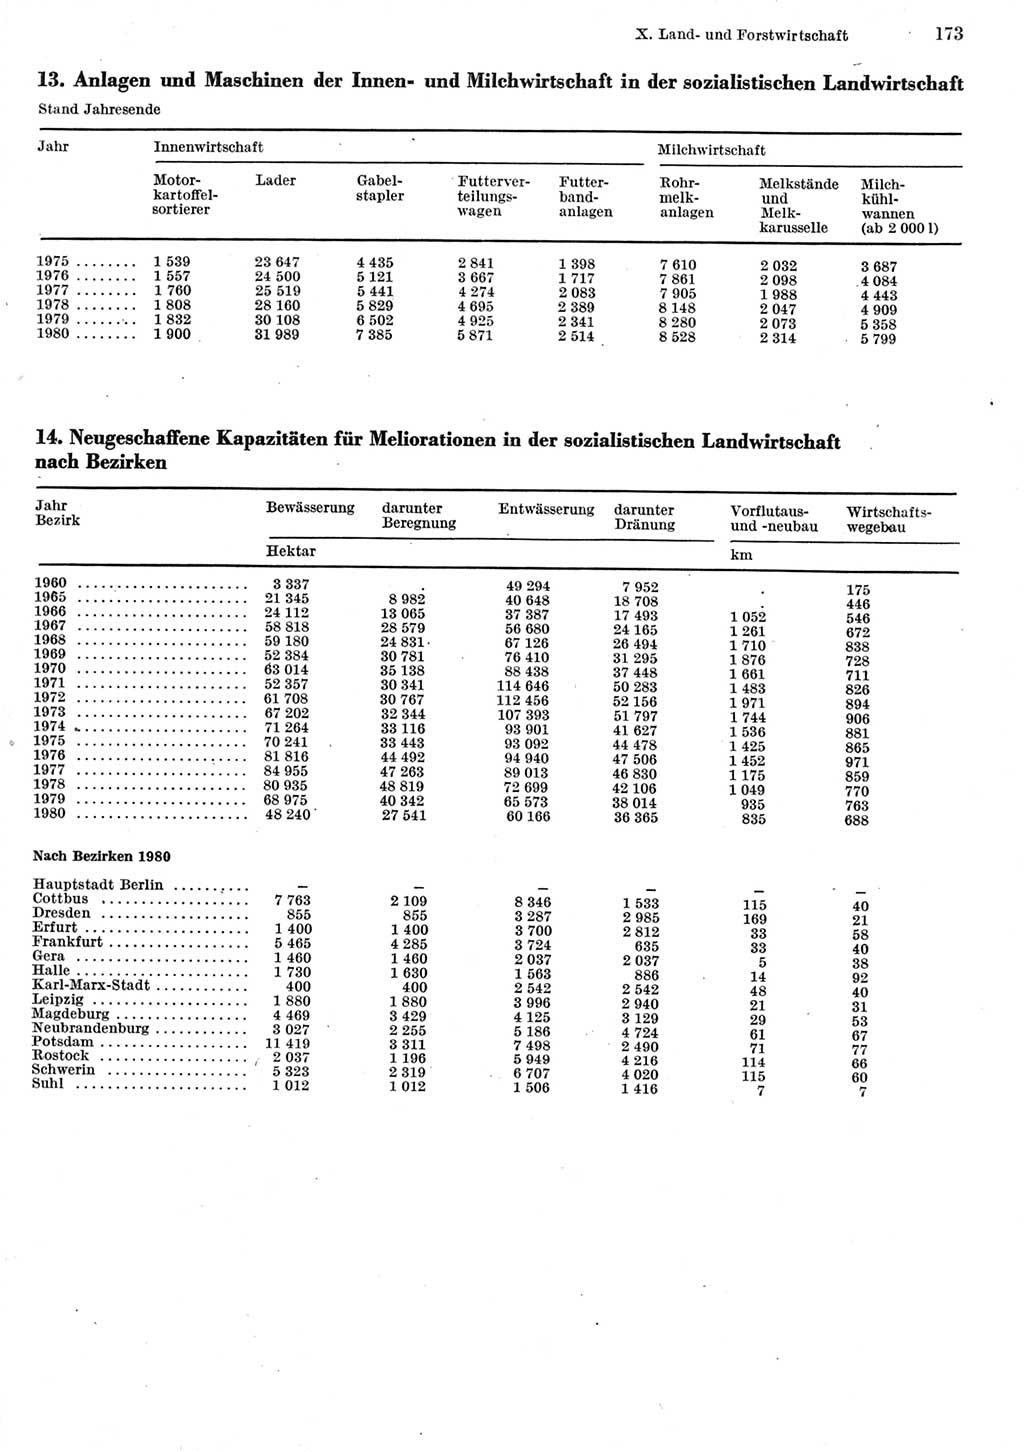 Statistisches Jahrbuch der Deutschen Demokratischen Republik (DDR) 1981, Seite 173 (Stat. Jb. DDR 1981, S. 173)